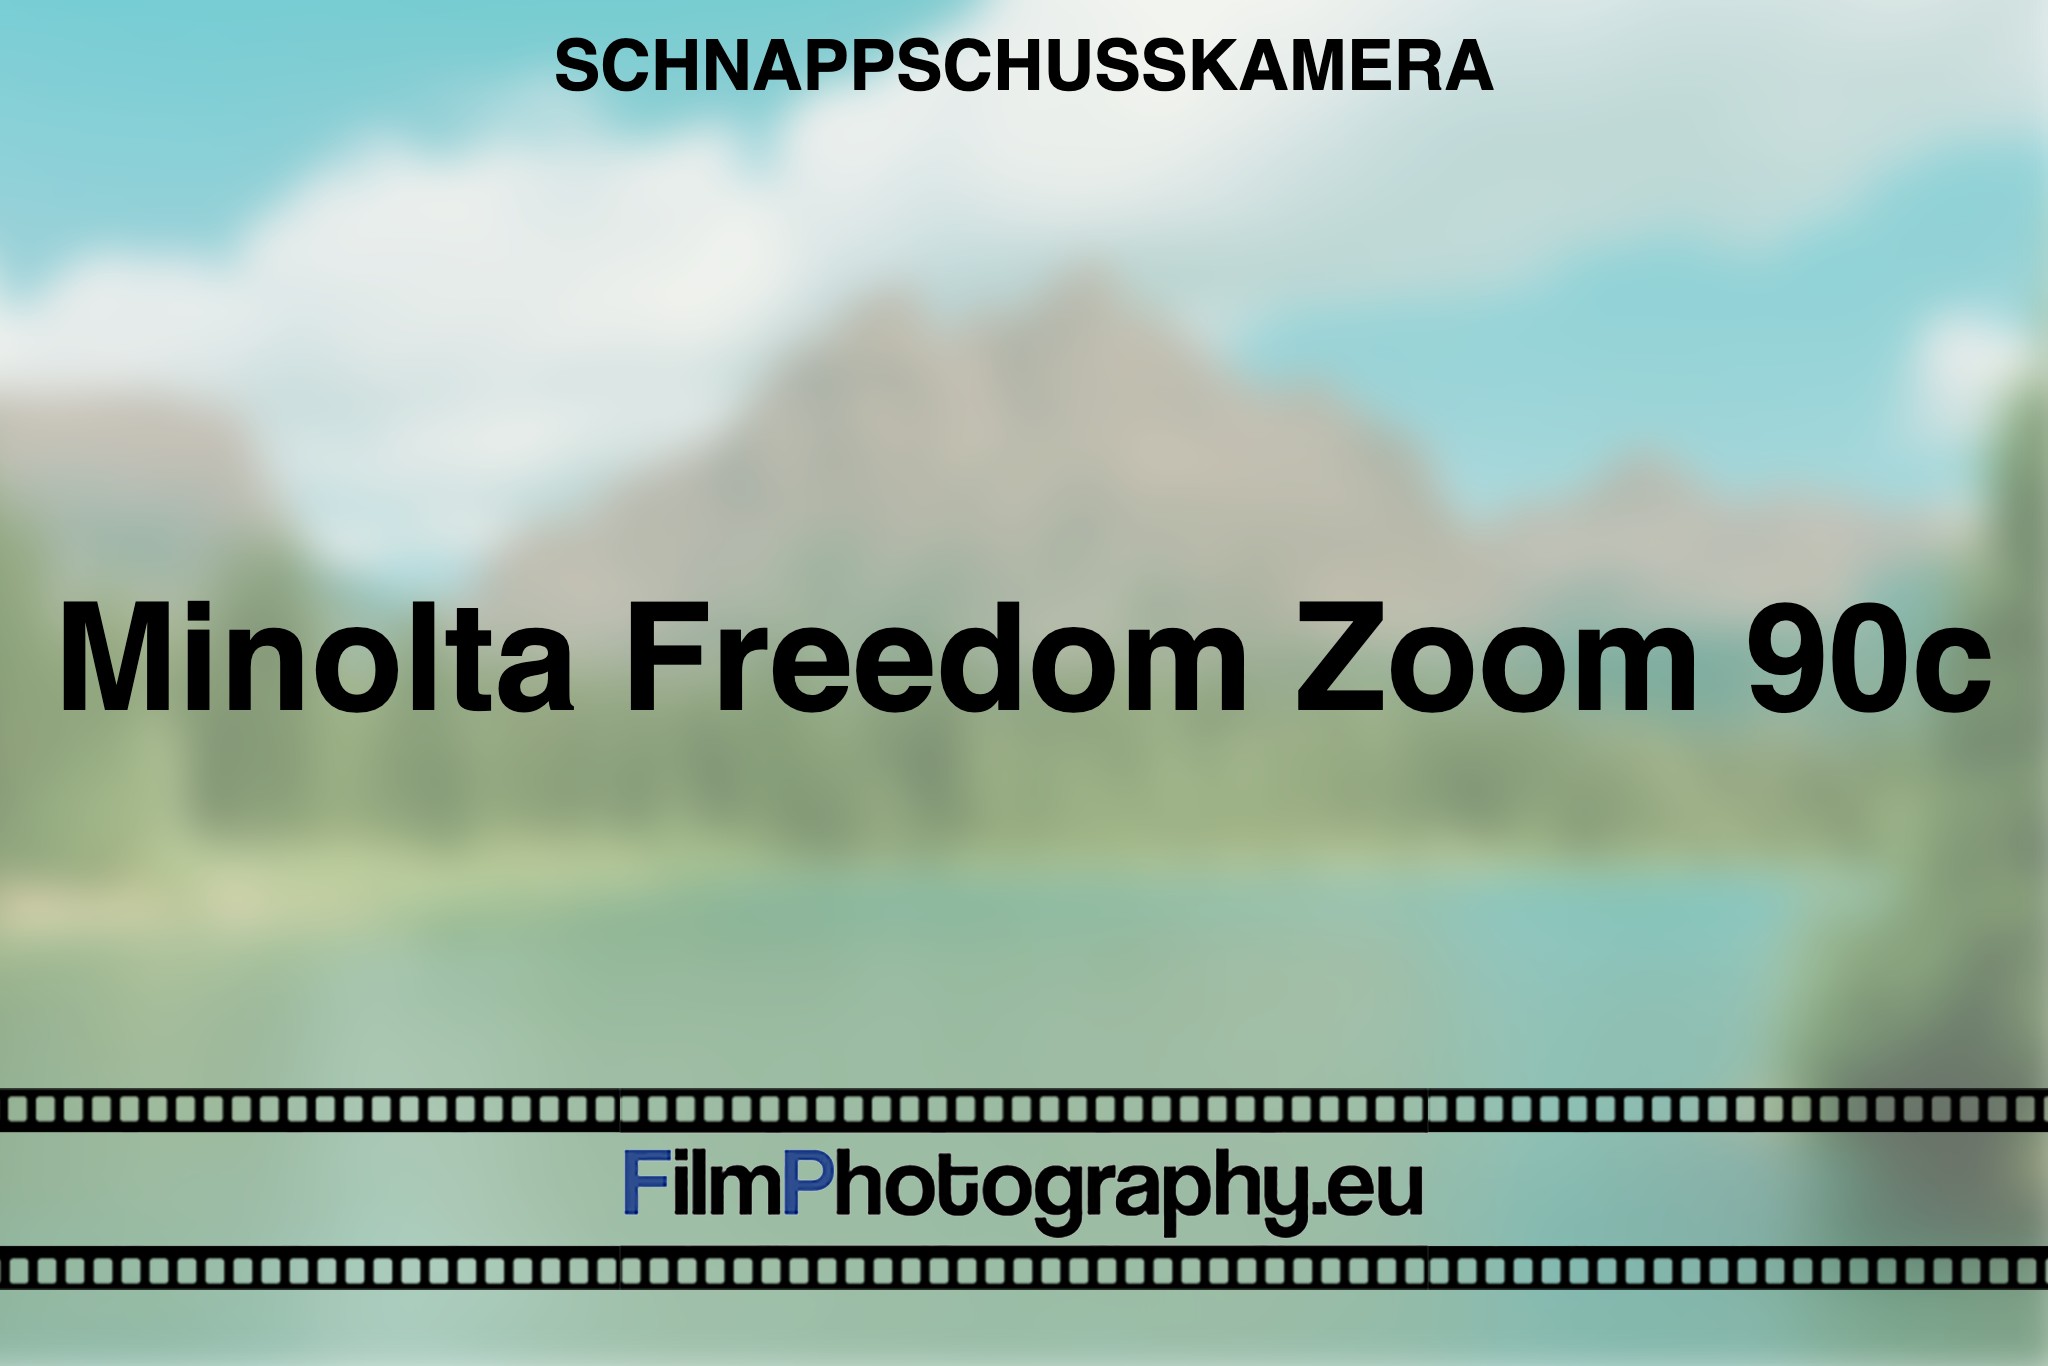 minolta-freedom-zoom-90c-schnappschusskamera-bnv